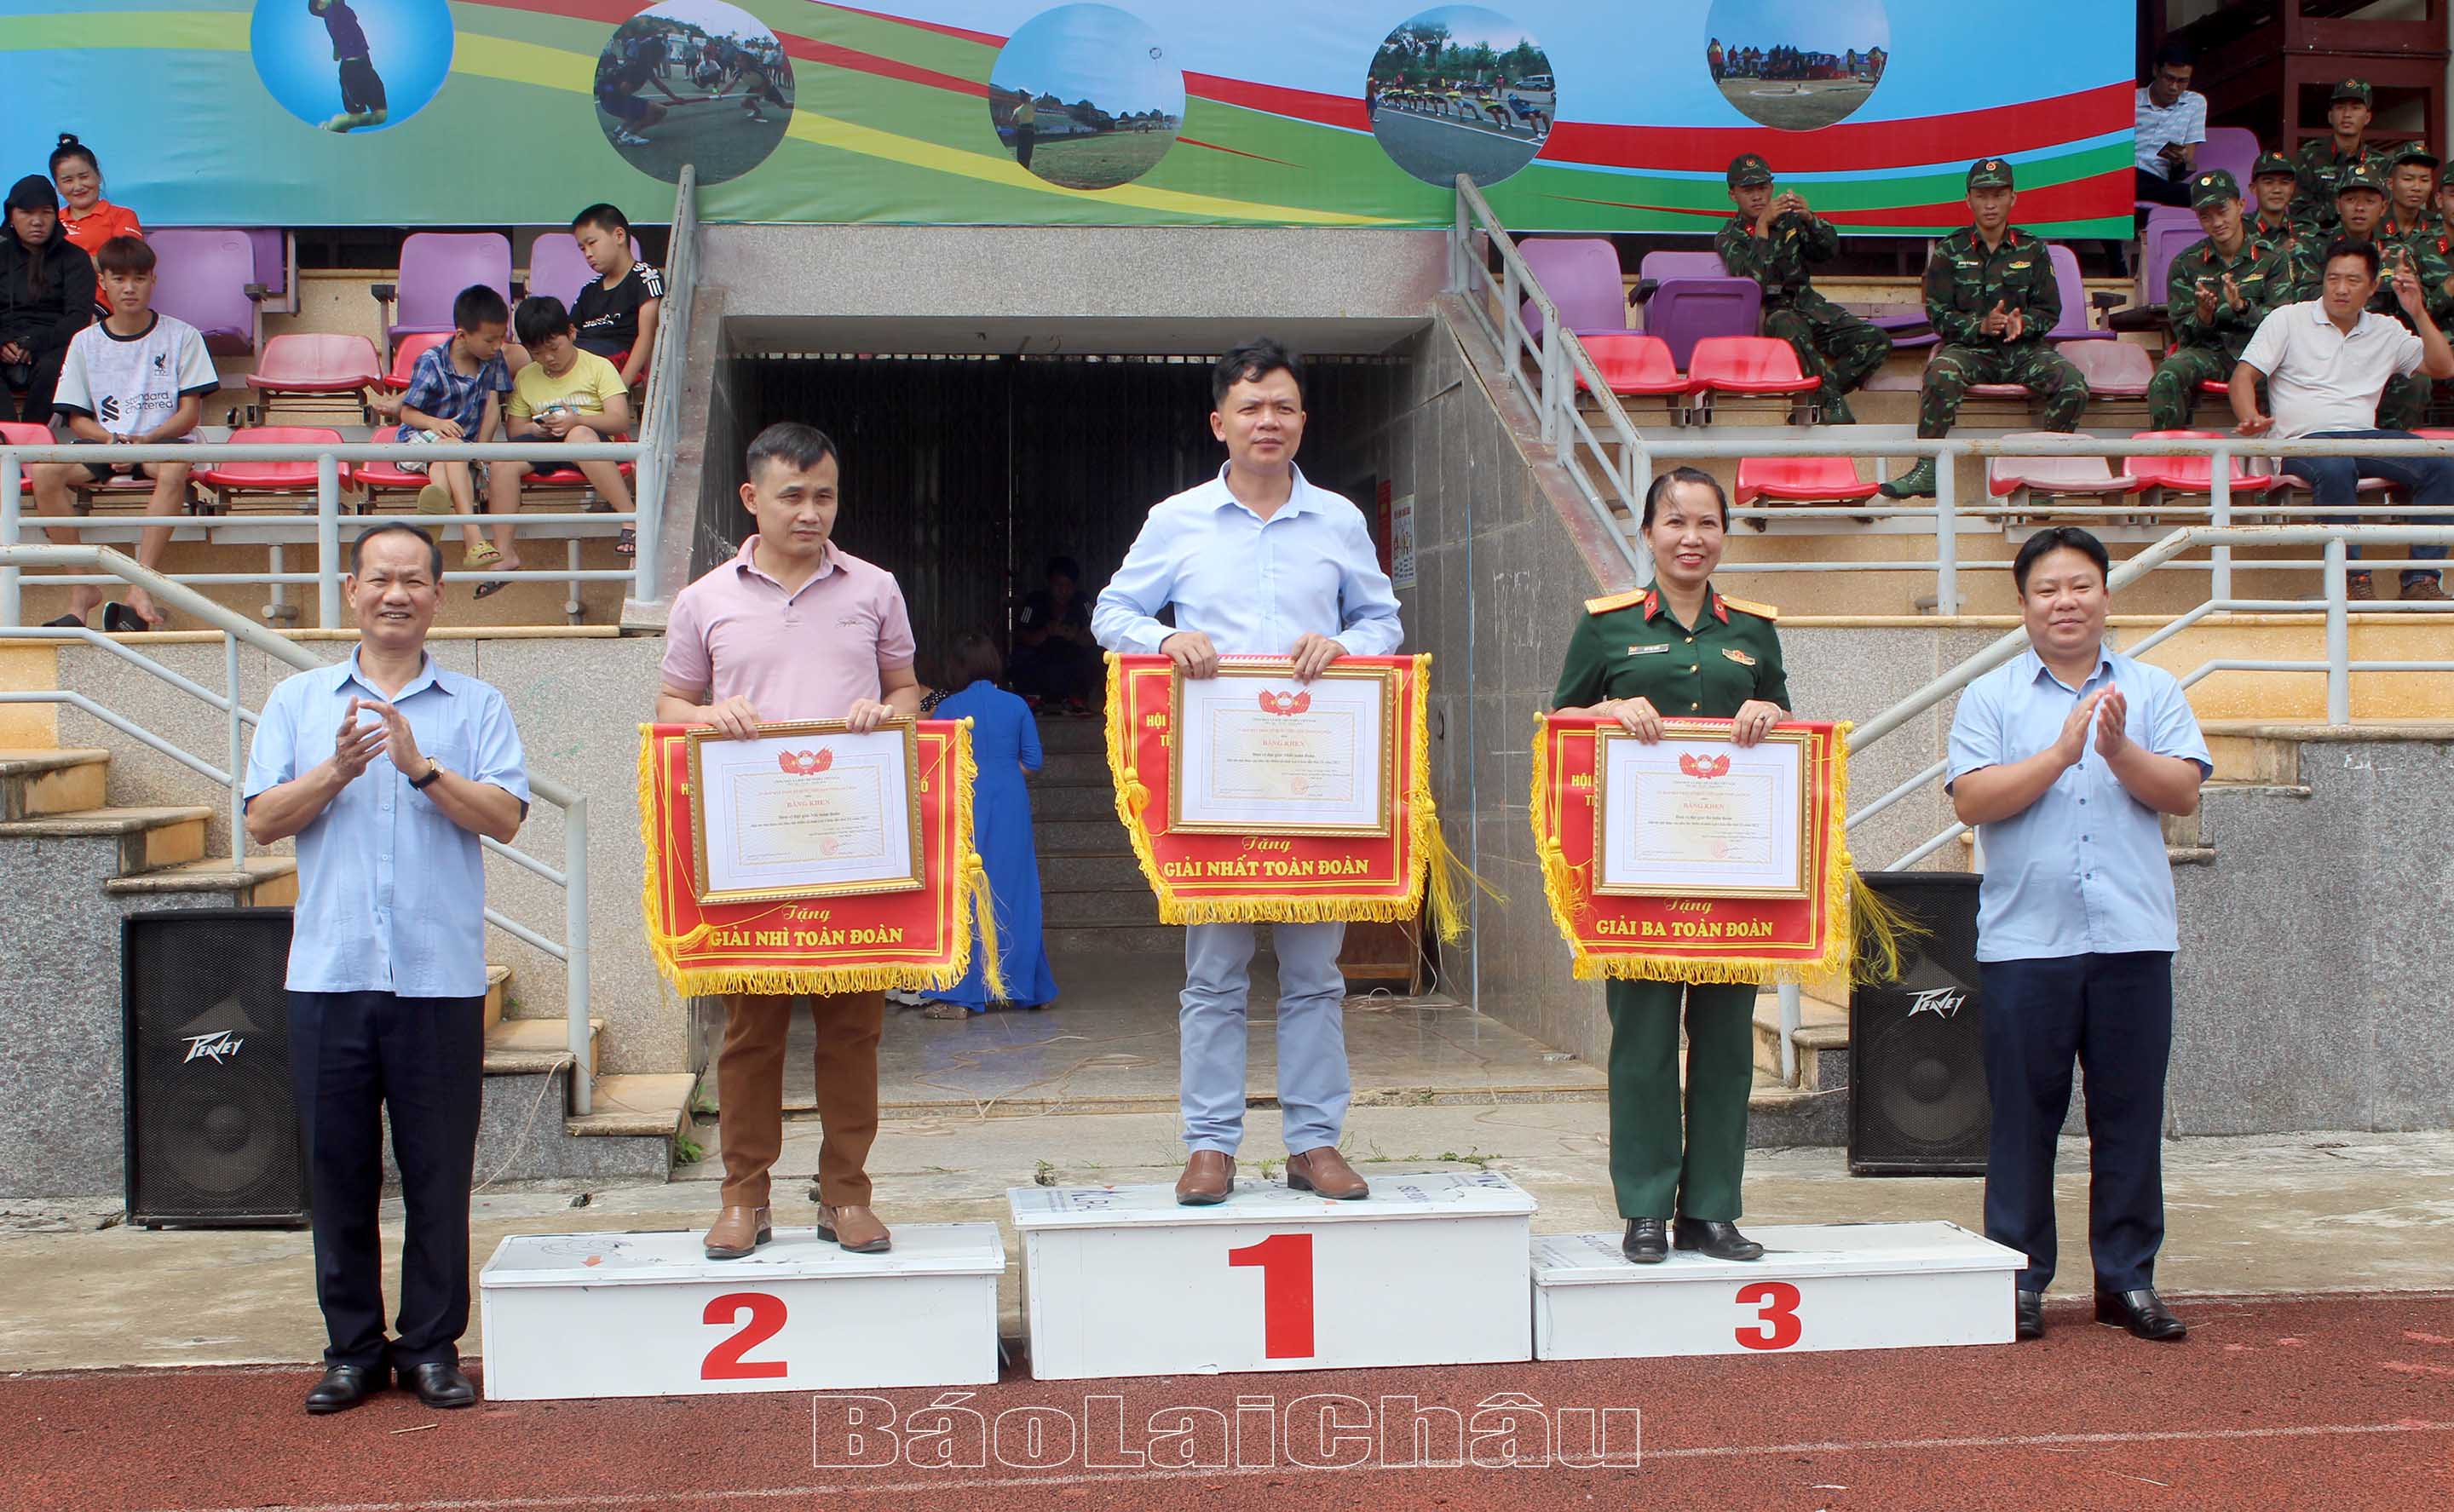 Lãnh đạo Ban Dân vận Tỉnh ủy, Sở Văn hóa Thể thao và Du lịch tỉnh trao cờ và tặng Bằng Khen cho các đội thi đấu xuất sắc.